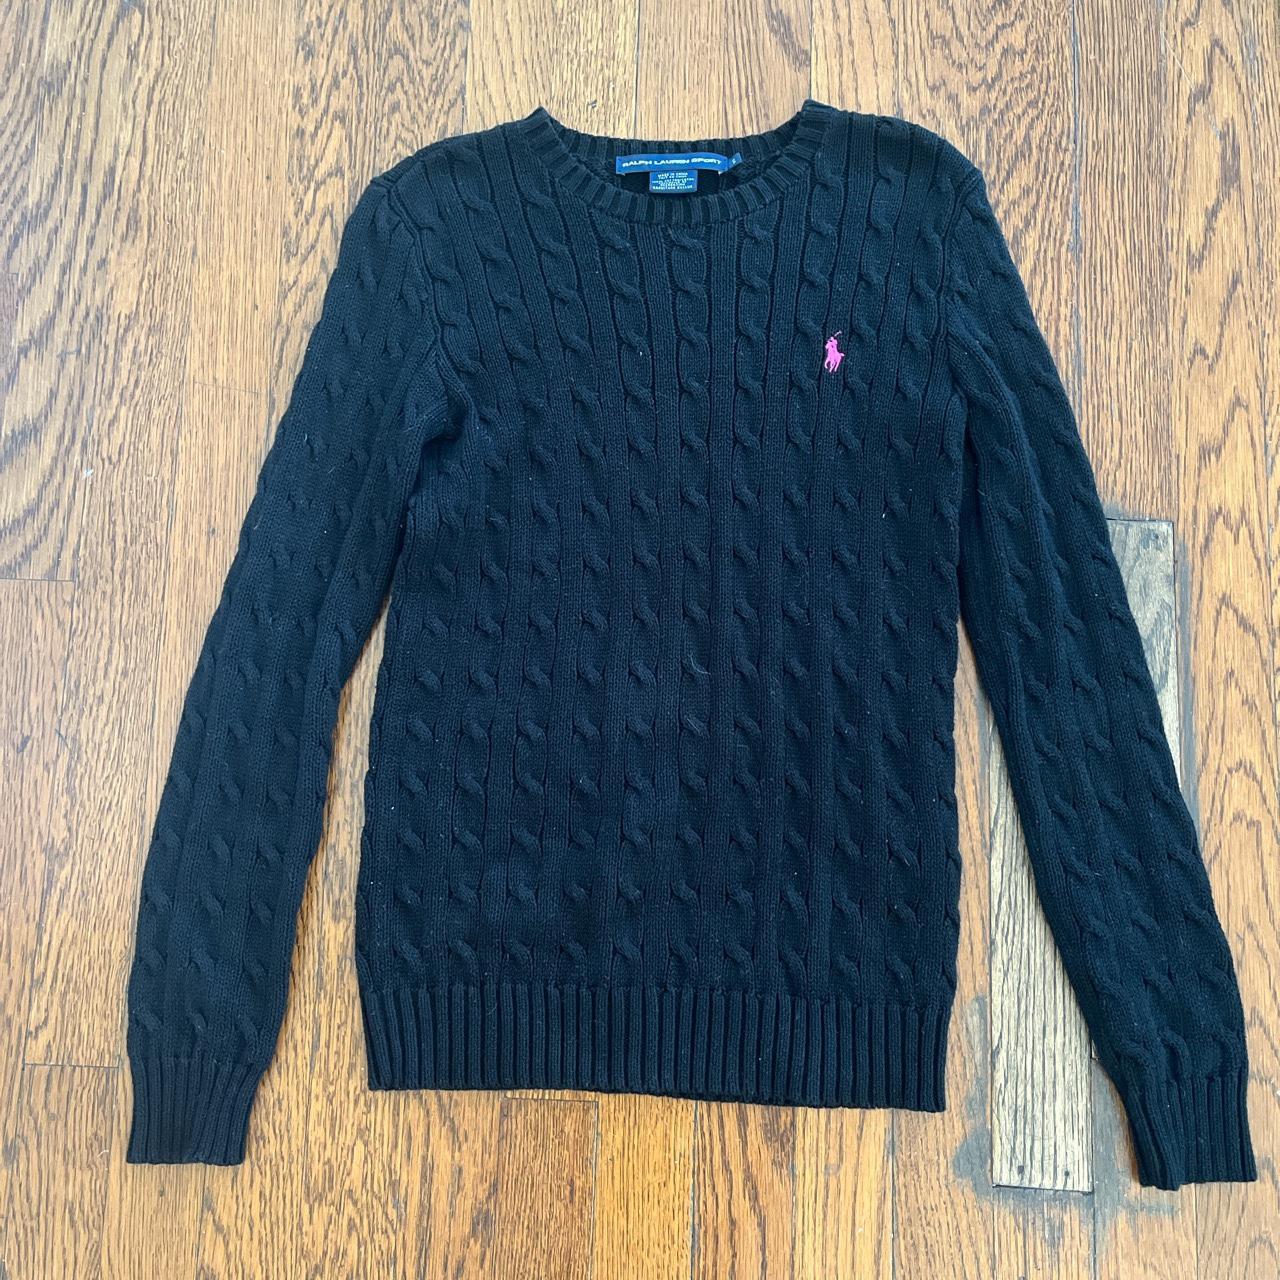 Ralph Lauren sweater Size Small #ralphlauren #sweater - Depop